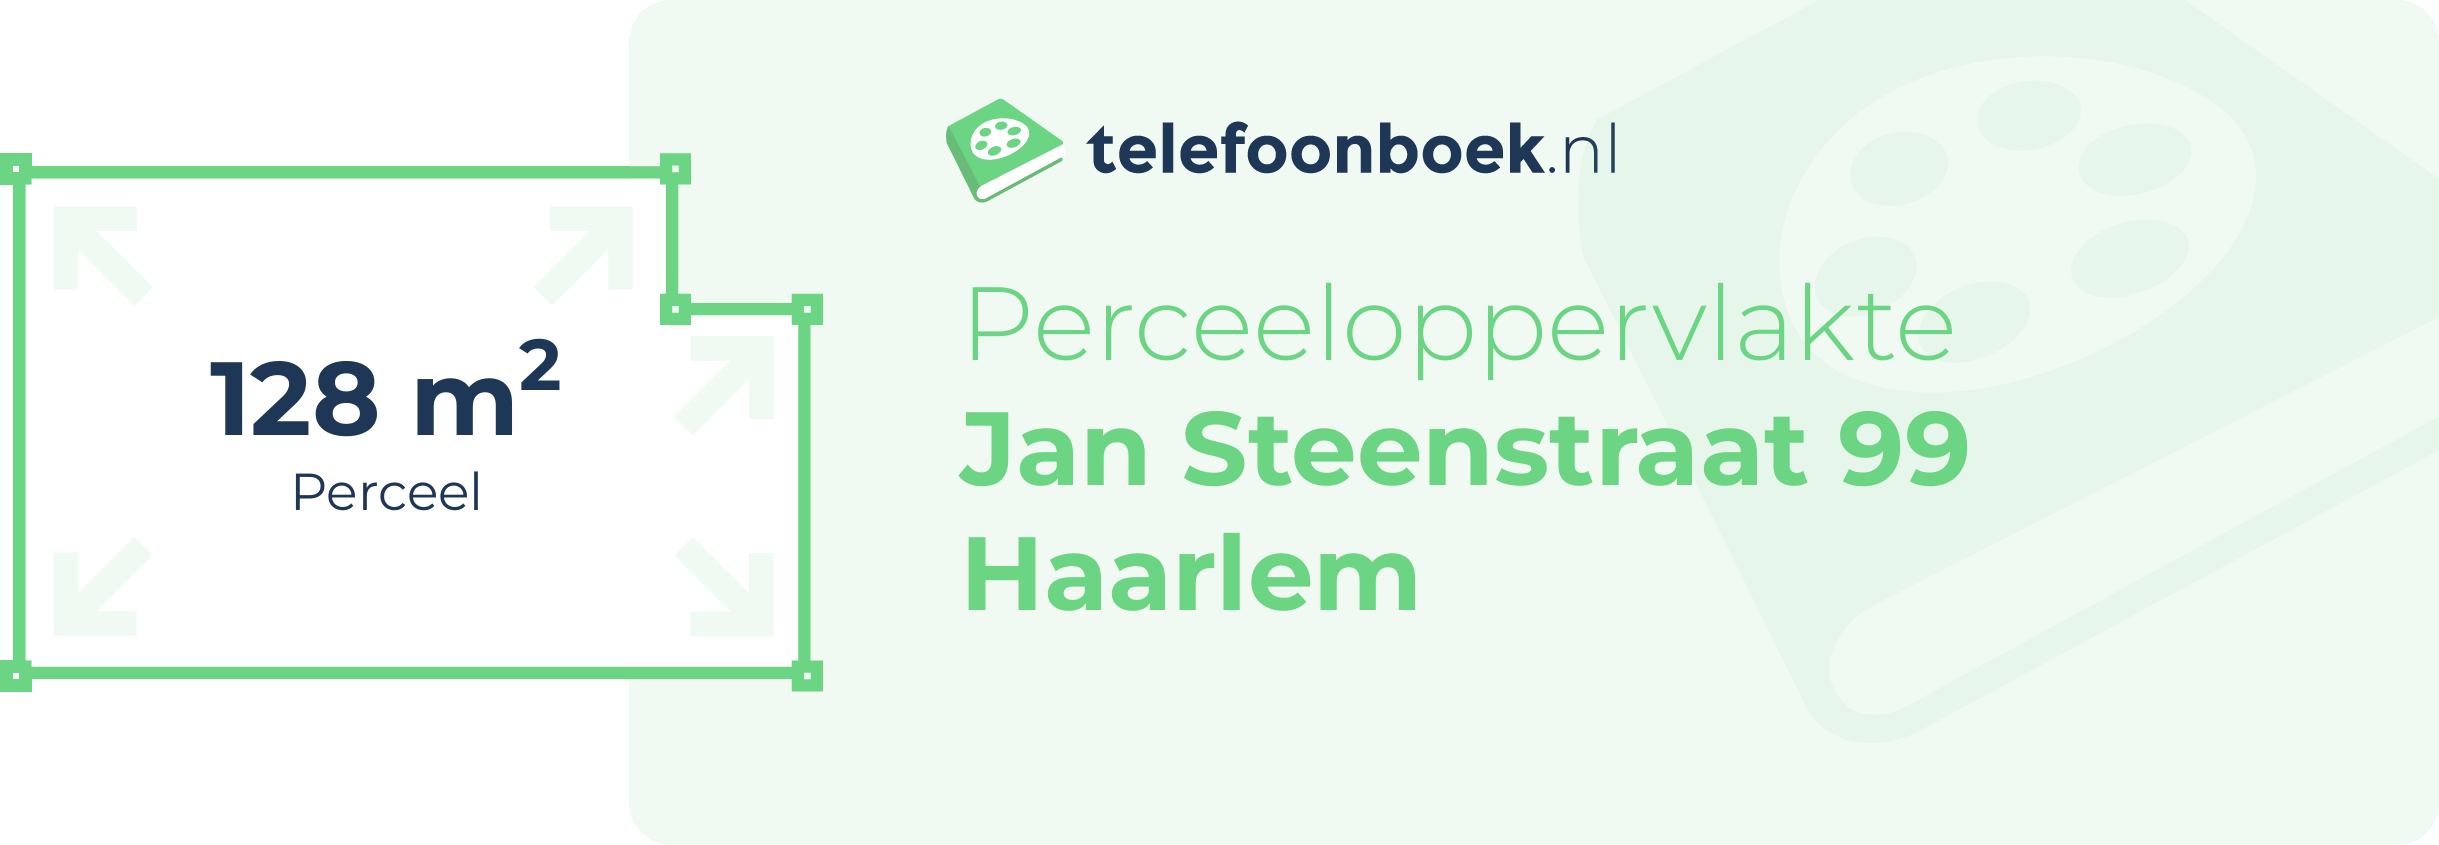 Perceeloppervlakte Jan Steenstraat 99 Haarlem